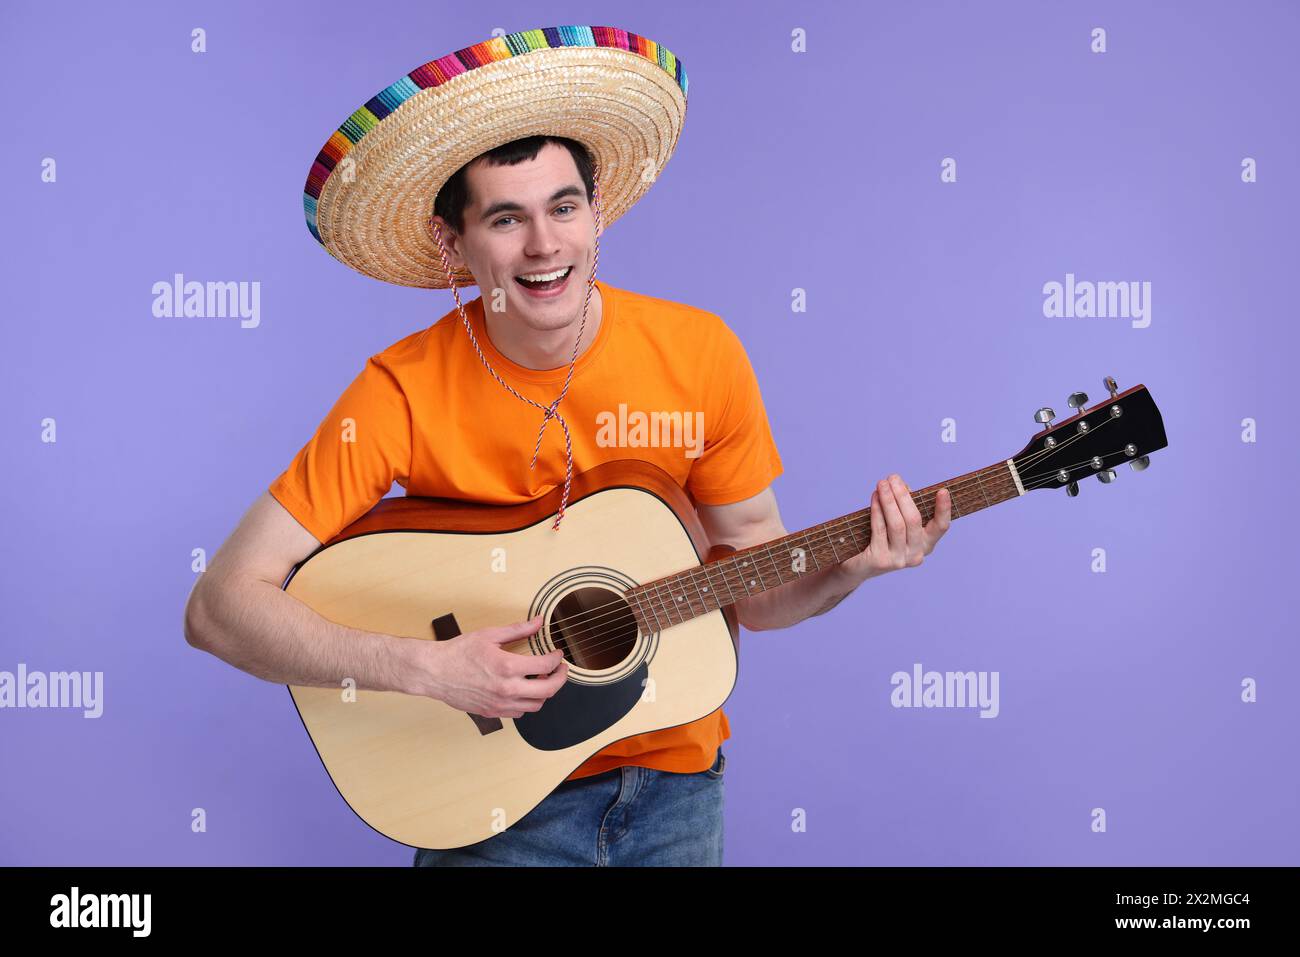 Jeune homme au chapeau sombrero mexicain jouant de la guitare sur fond violet Banque D'Images